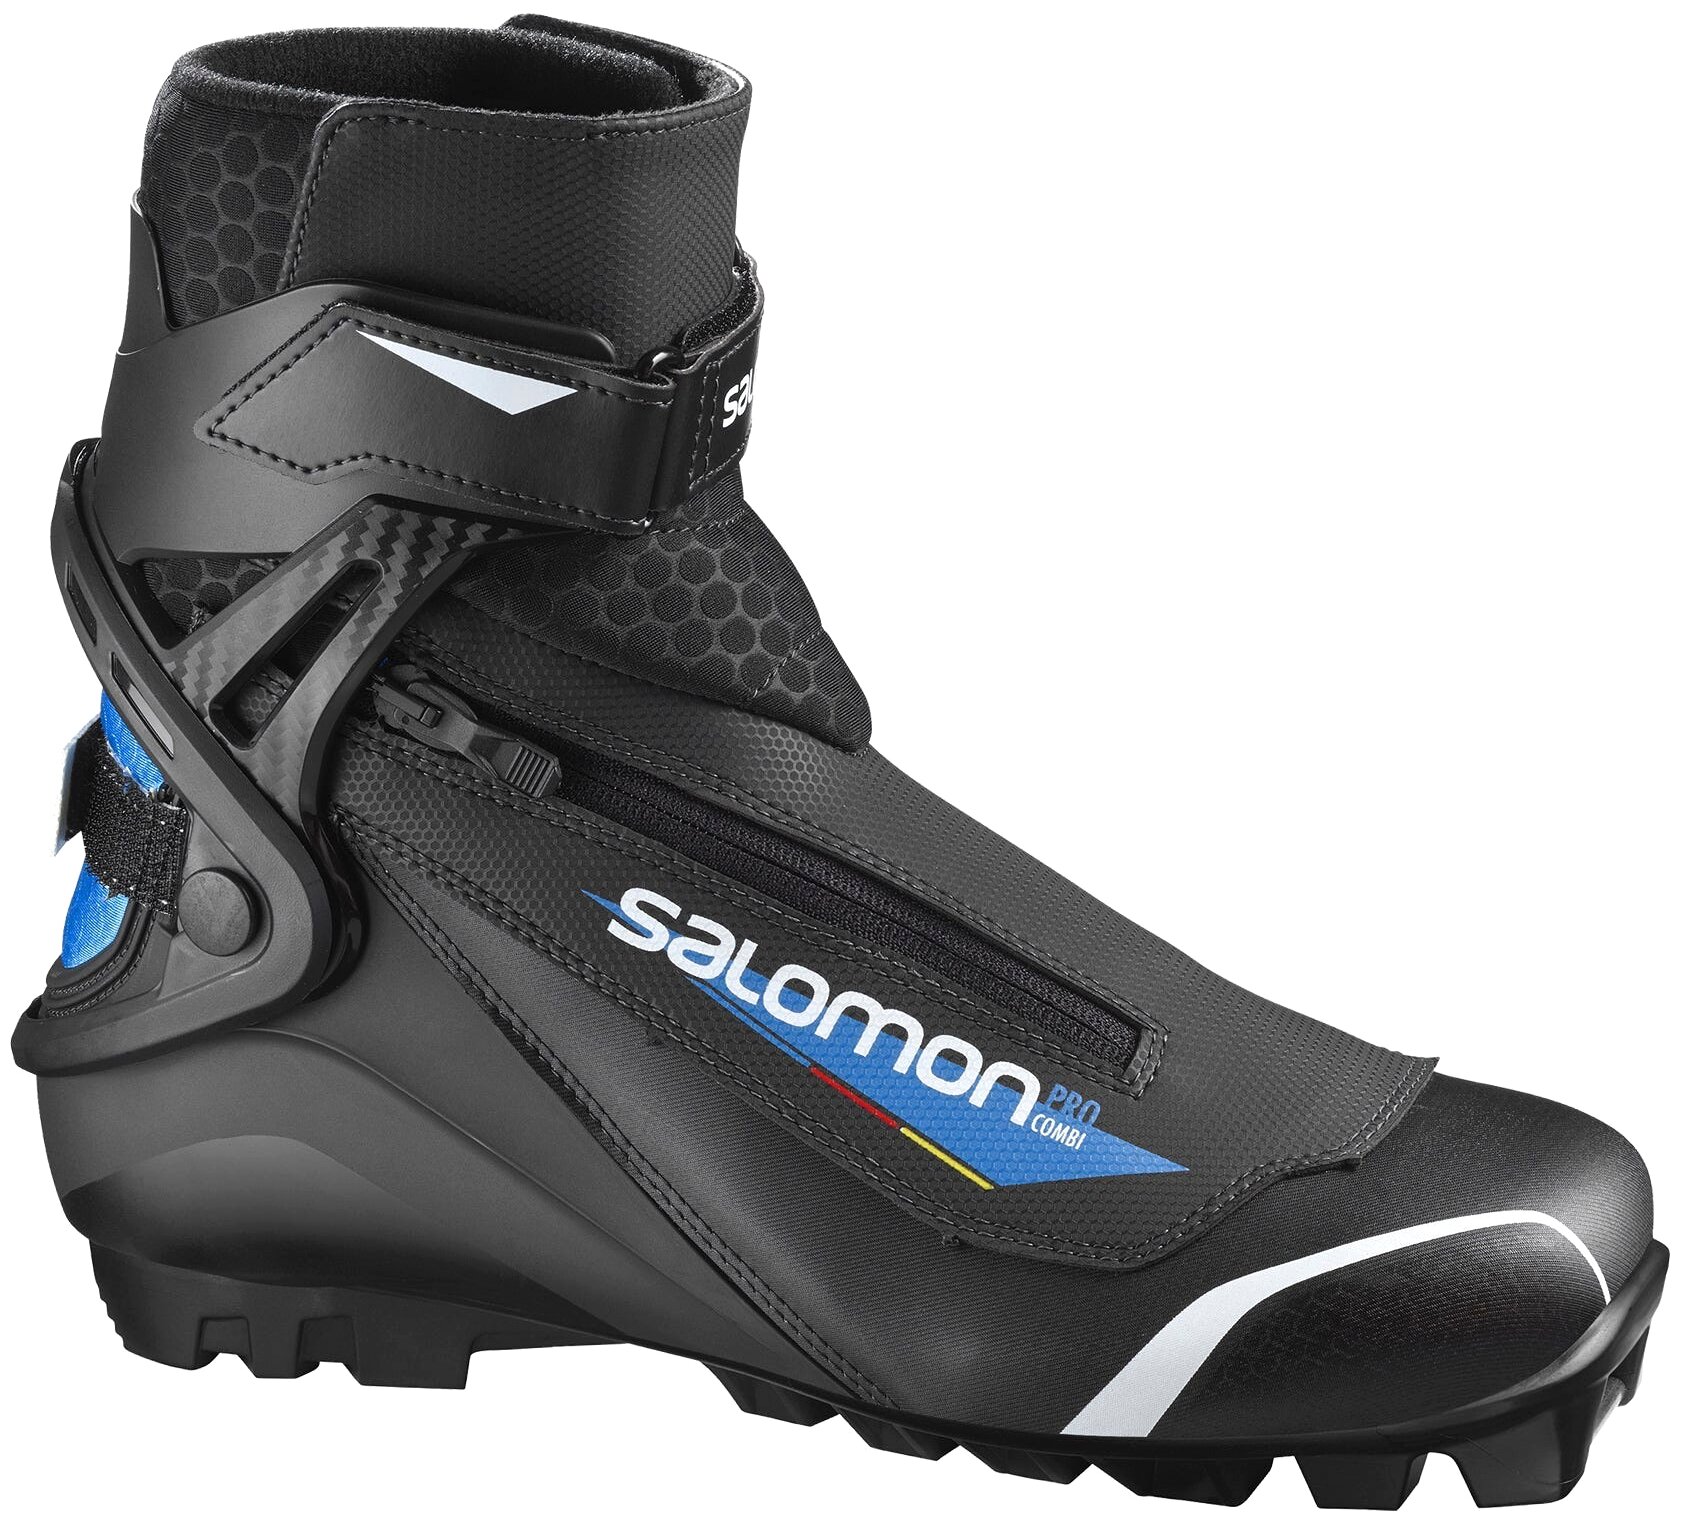 Лыжные ботинки Salomon Pro Combi 408685 SNS Pilot (черный/синий/белый) 2019-2020 39 EU